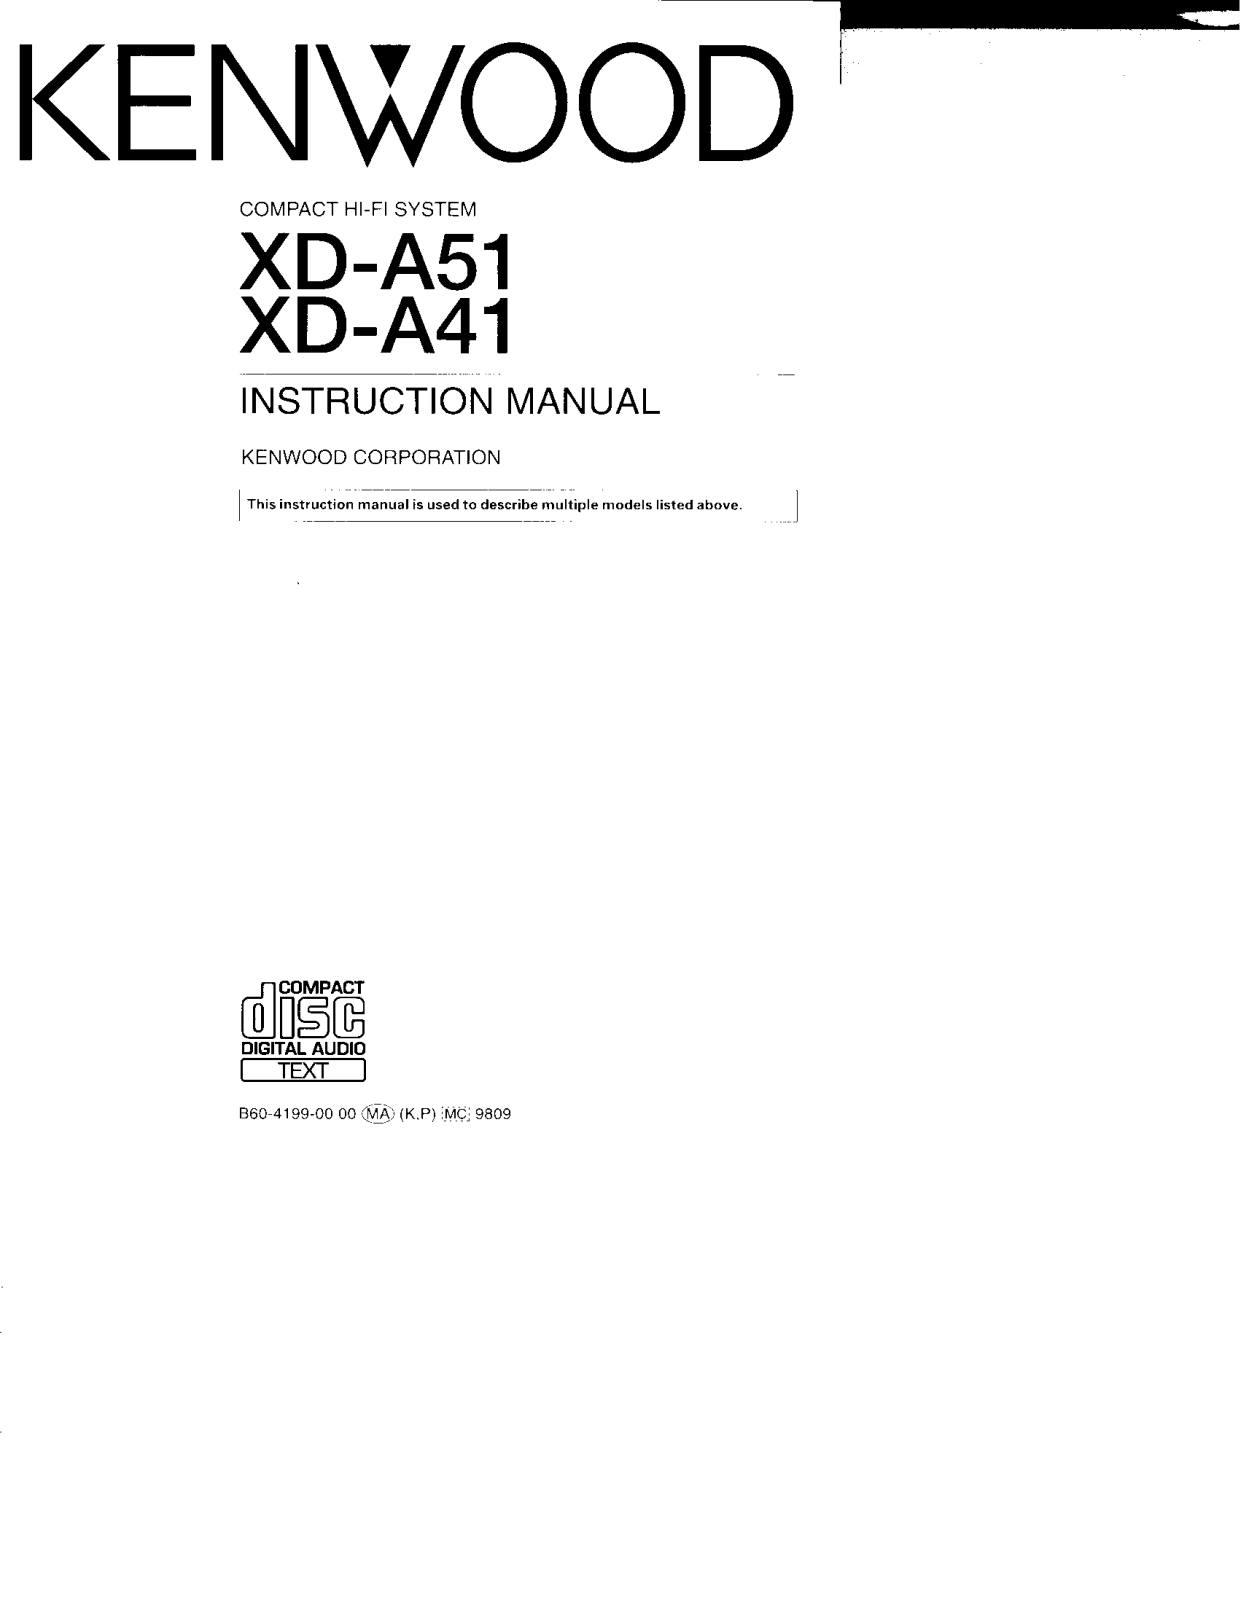 Kenwood XD-A51, RXD-A41, RXD-A51, LS-N452, XD-A41 Owner's Manual